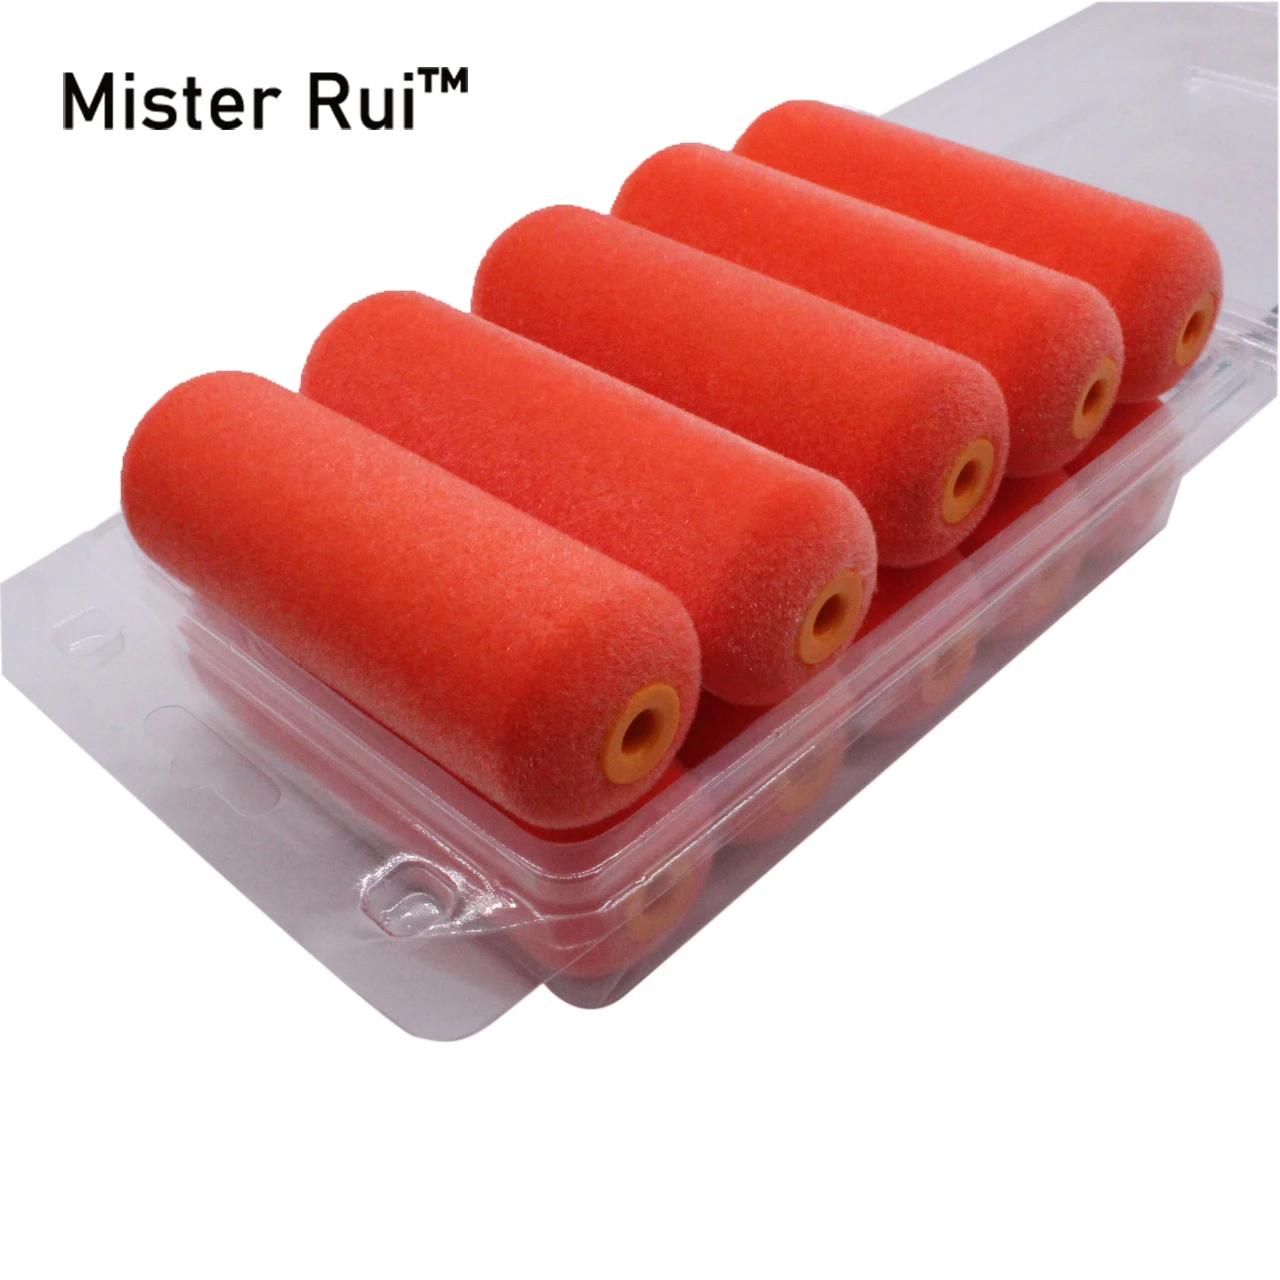 Mister Rui Foam Paint Roller, 10PCs, 4 Inch Foam Paint Roller